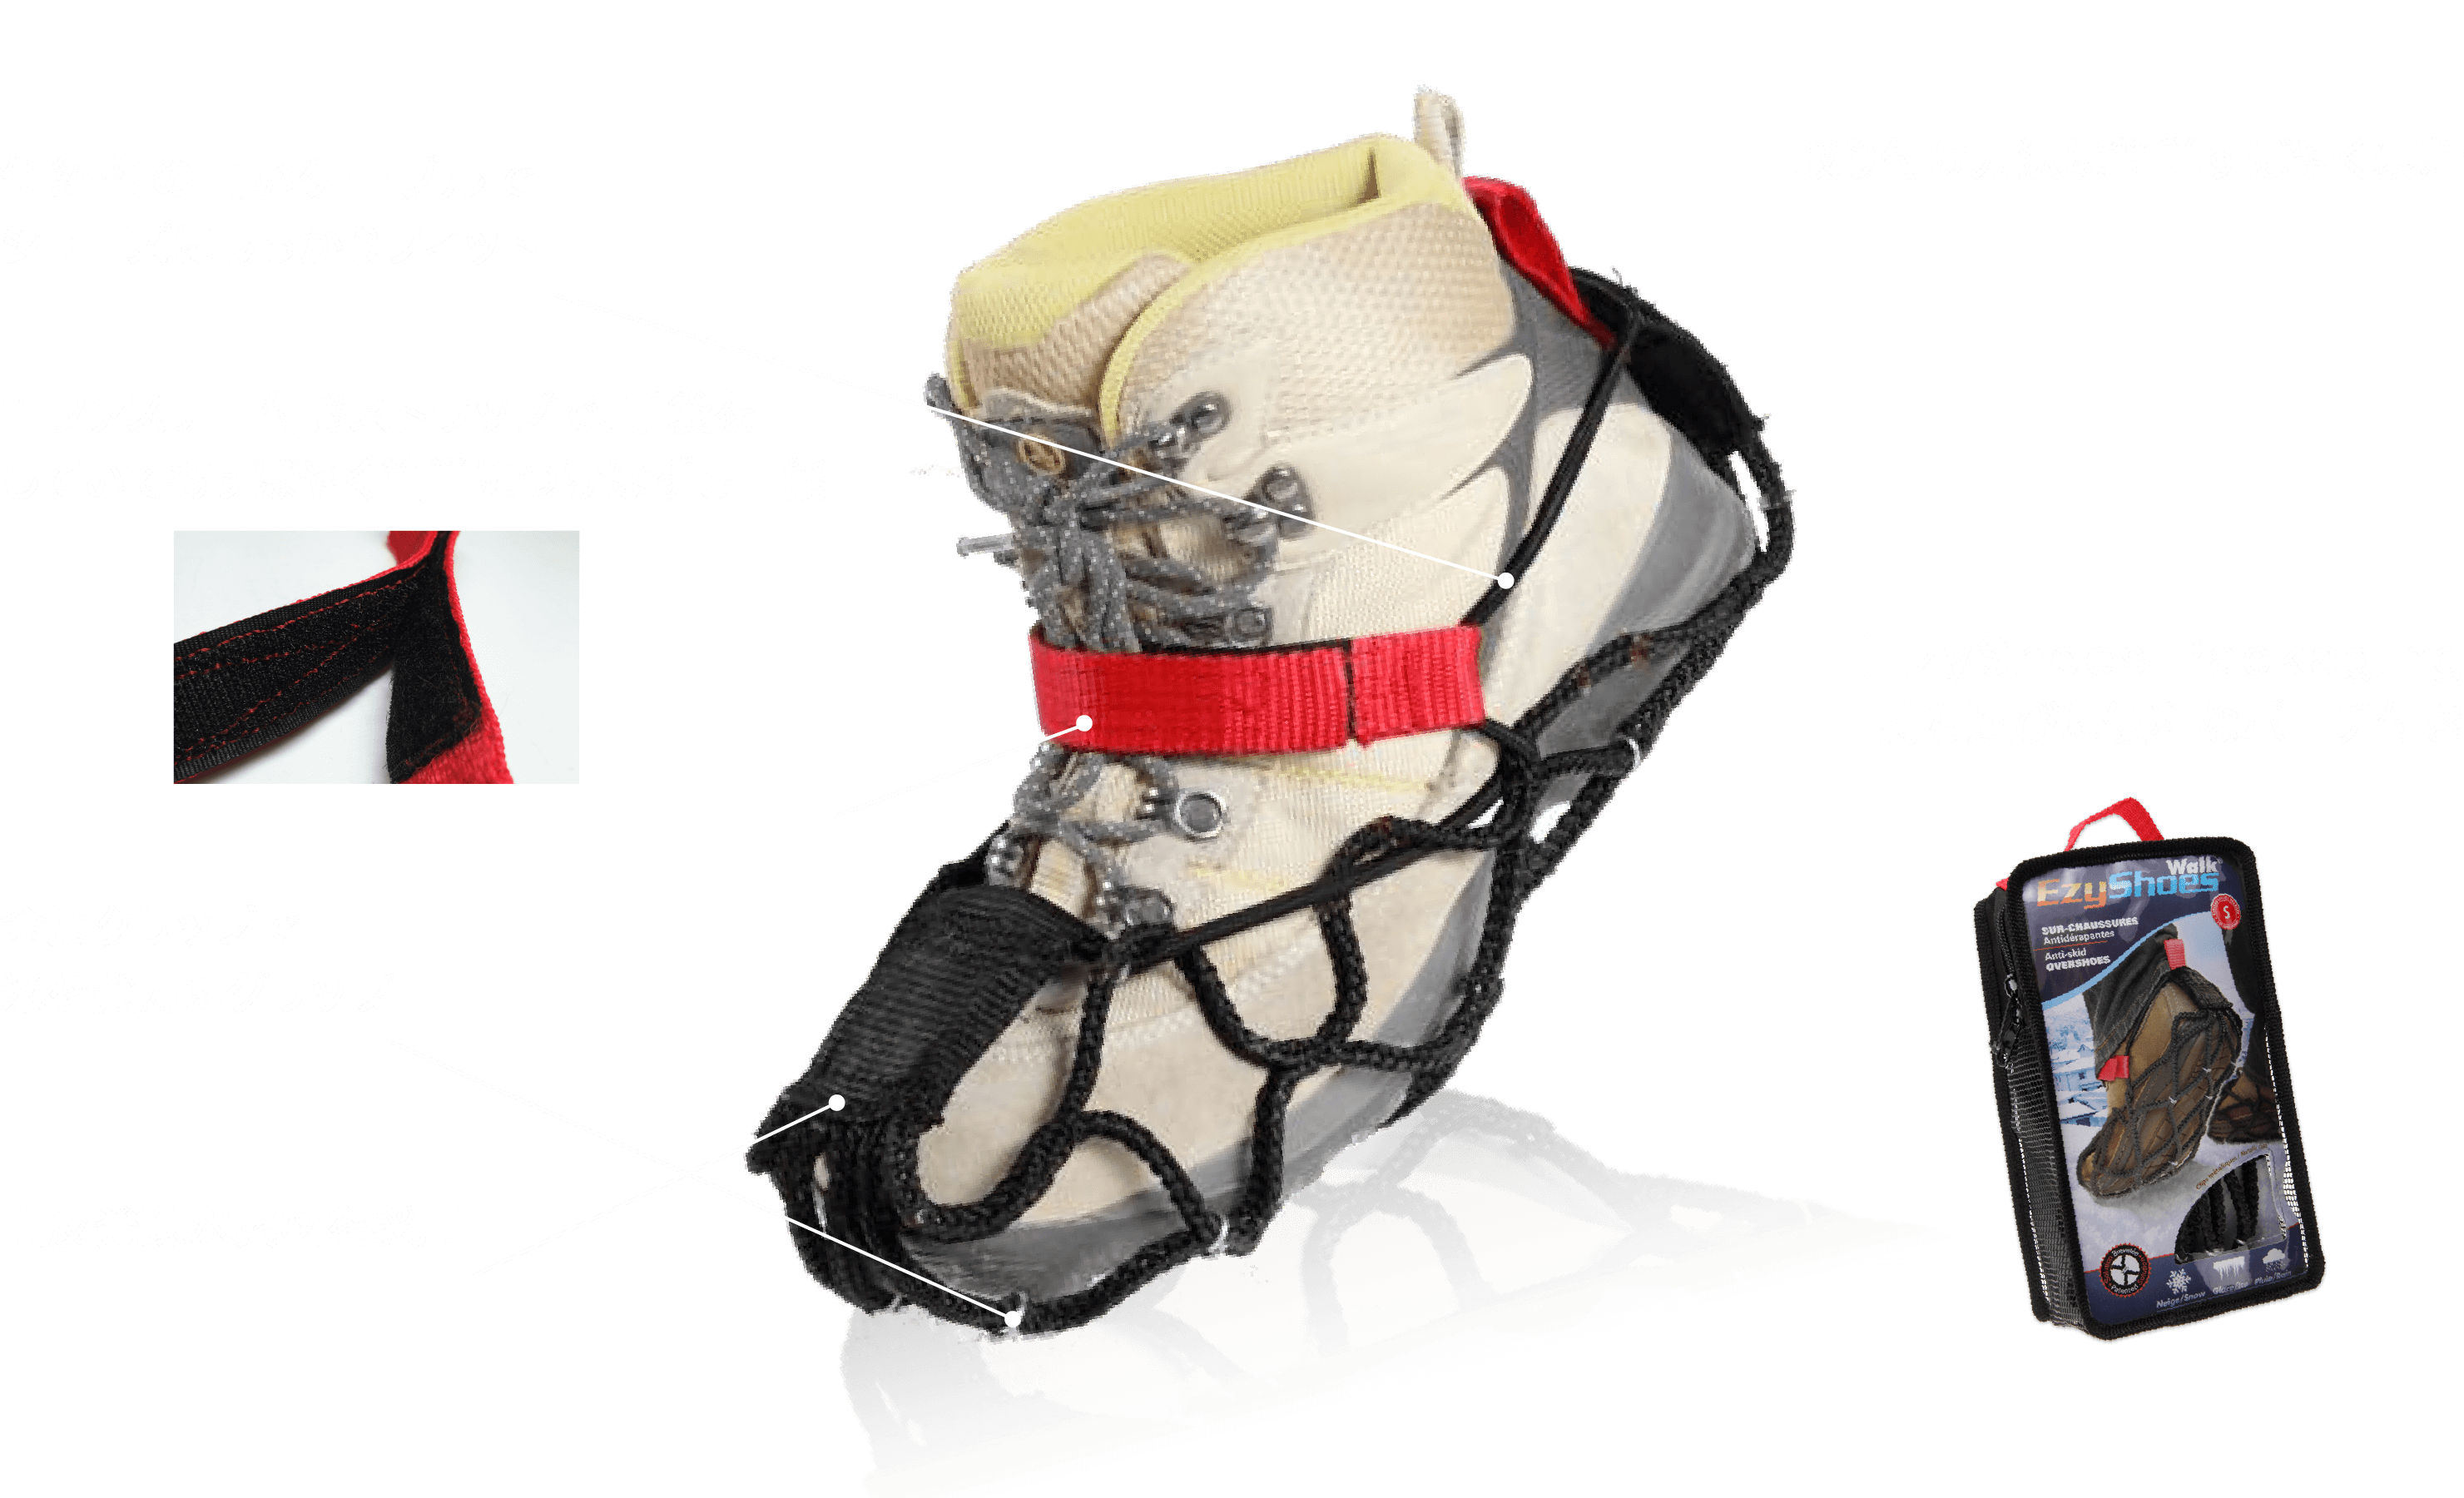 伸縮性の高いケーブルでシューズにしっかりフィット 両ファスナー付きストラップで、手袋をしていてもすばやく簡単につけはずし可能 金属クリップで氷を強力にグリップ 高反発疎水素材を採用 Ezy Shoes Packaging持ち運びに便利なポーチ付き